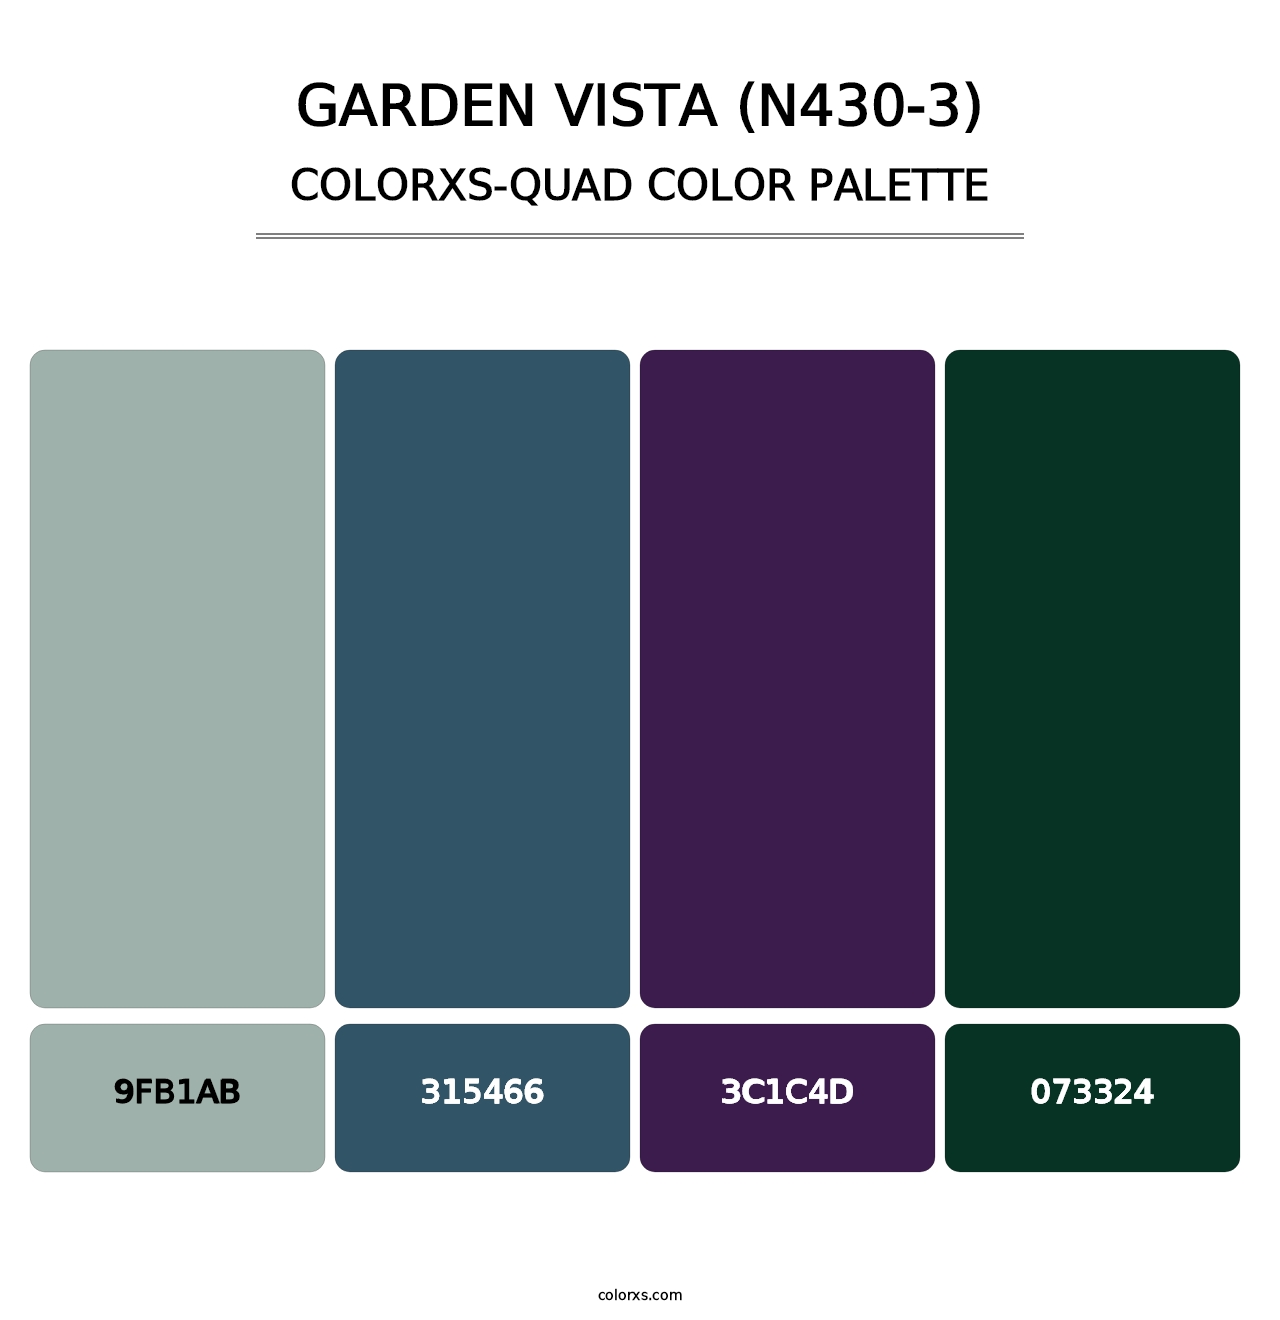 Garden Vista (N430-3) - Colorxs Quad Palette